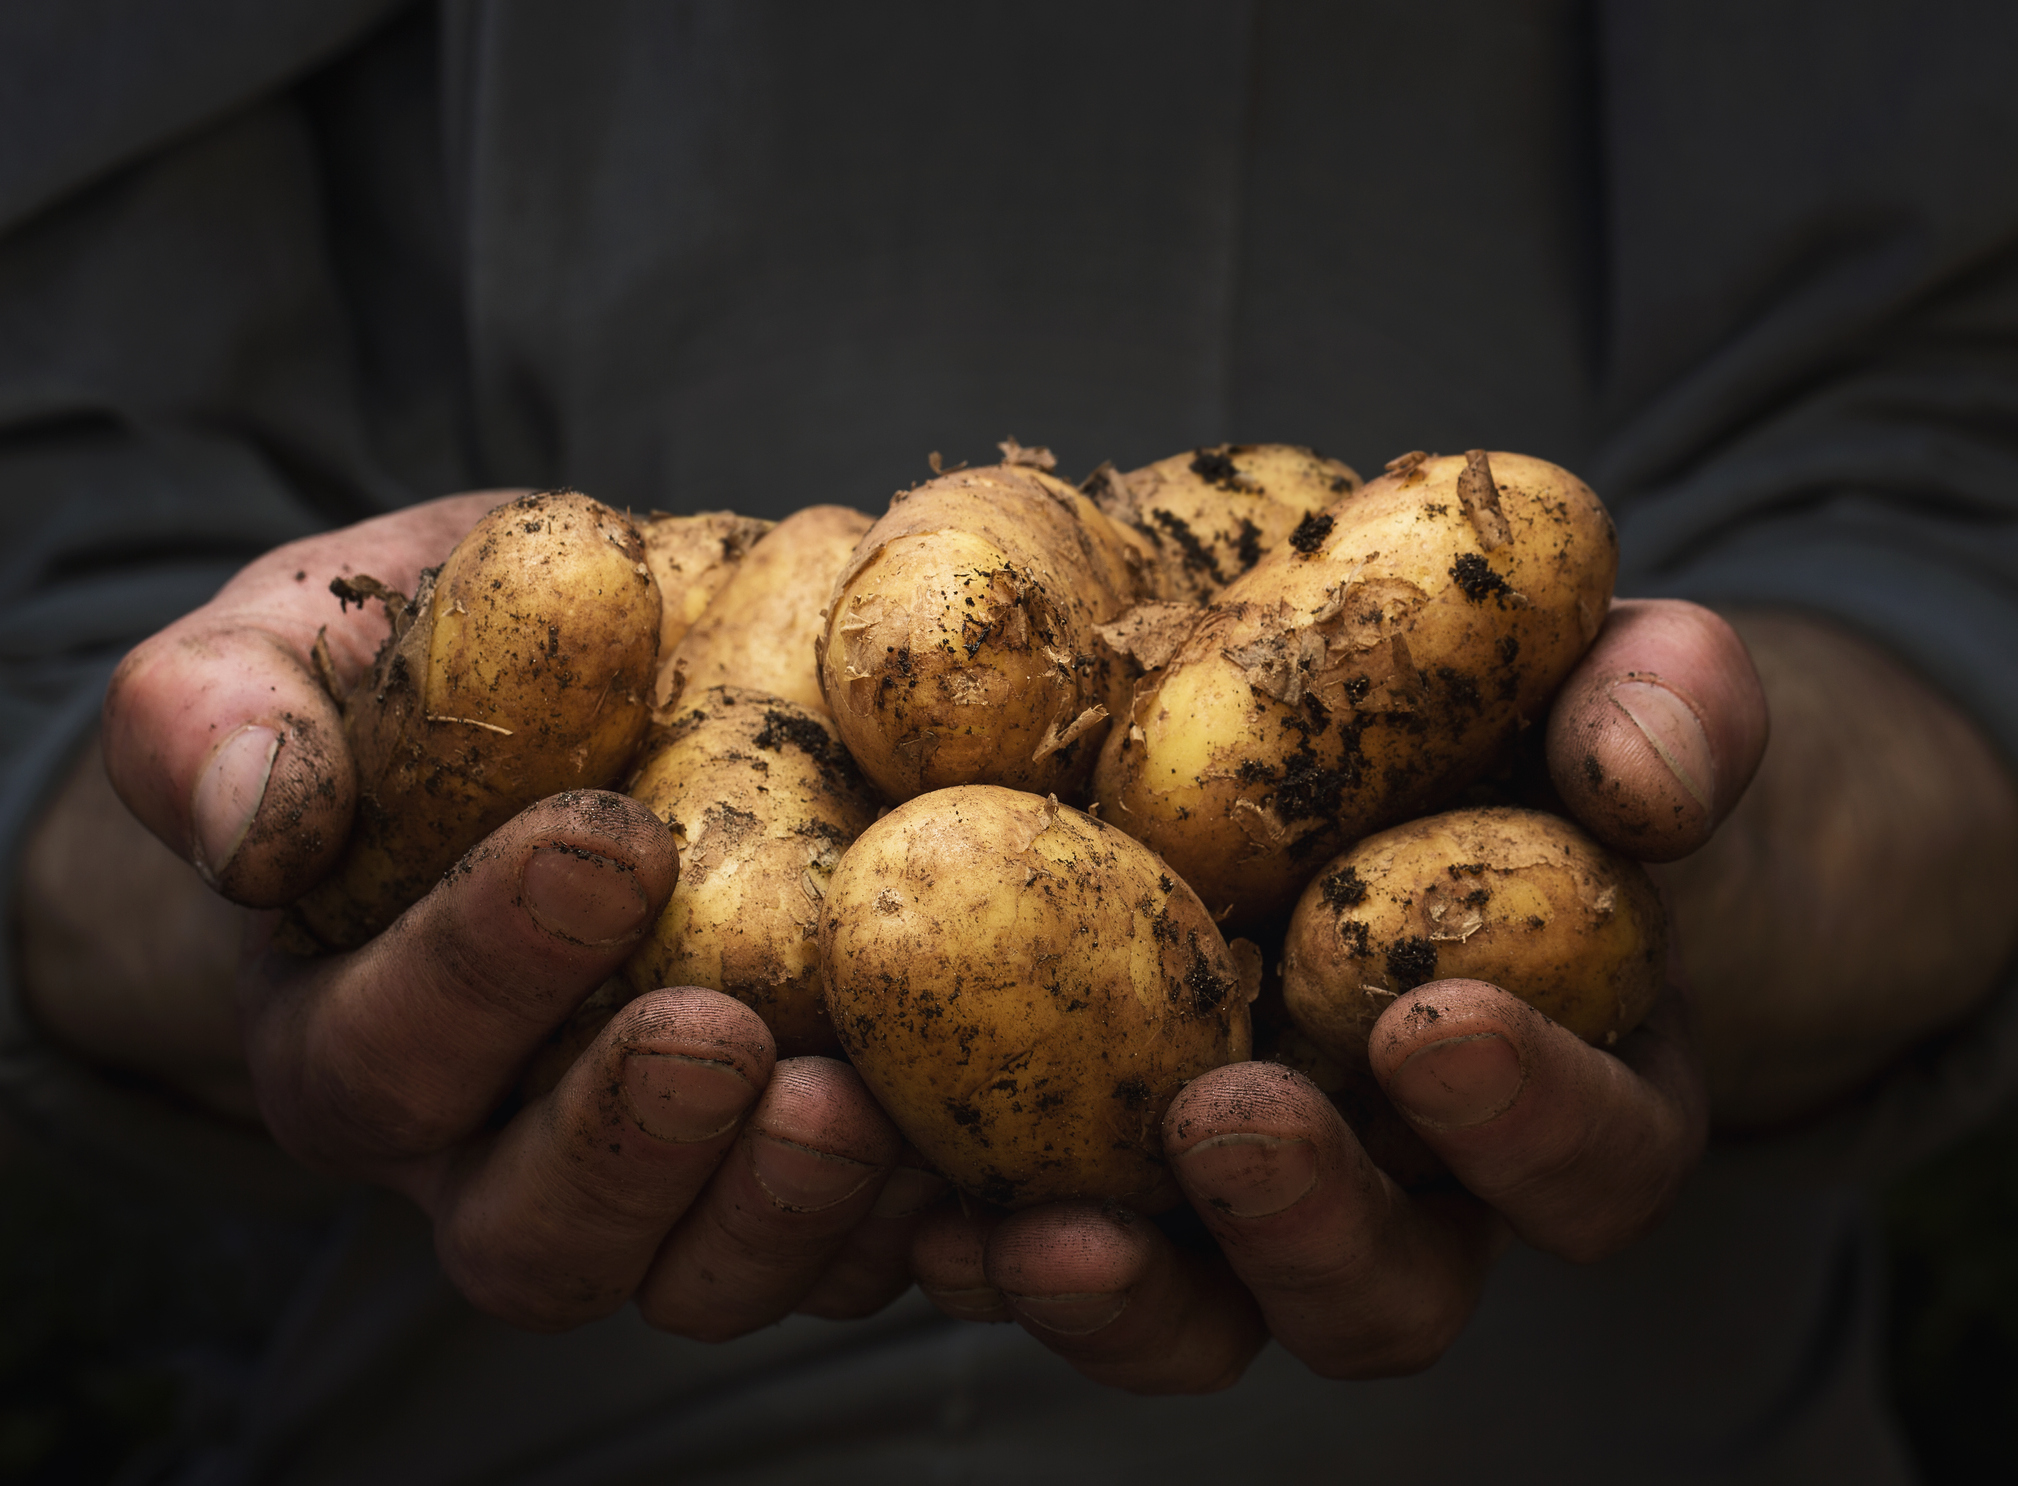 Der Dreck auf den Kartoffeln wird schön den Magen reinigen! © Nastco